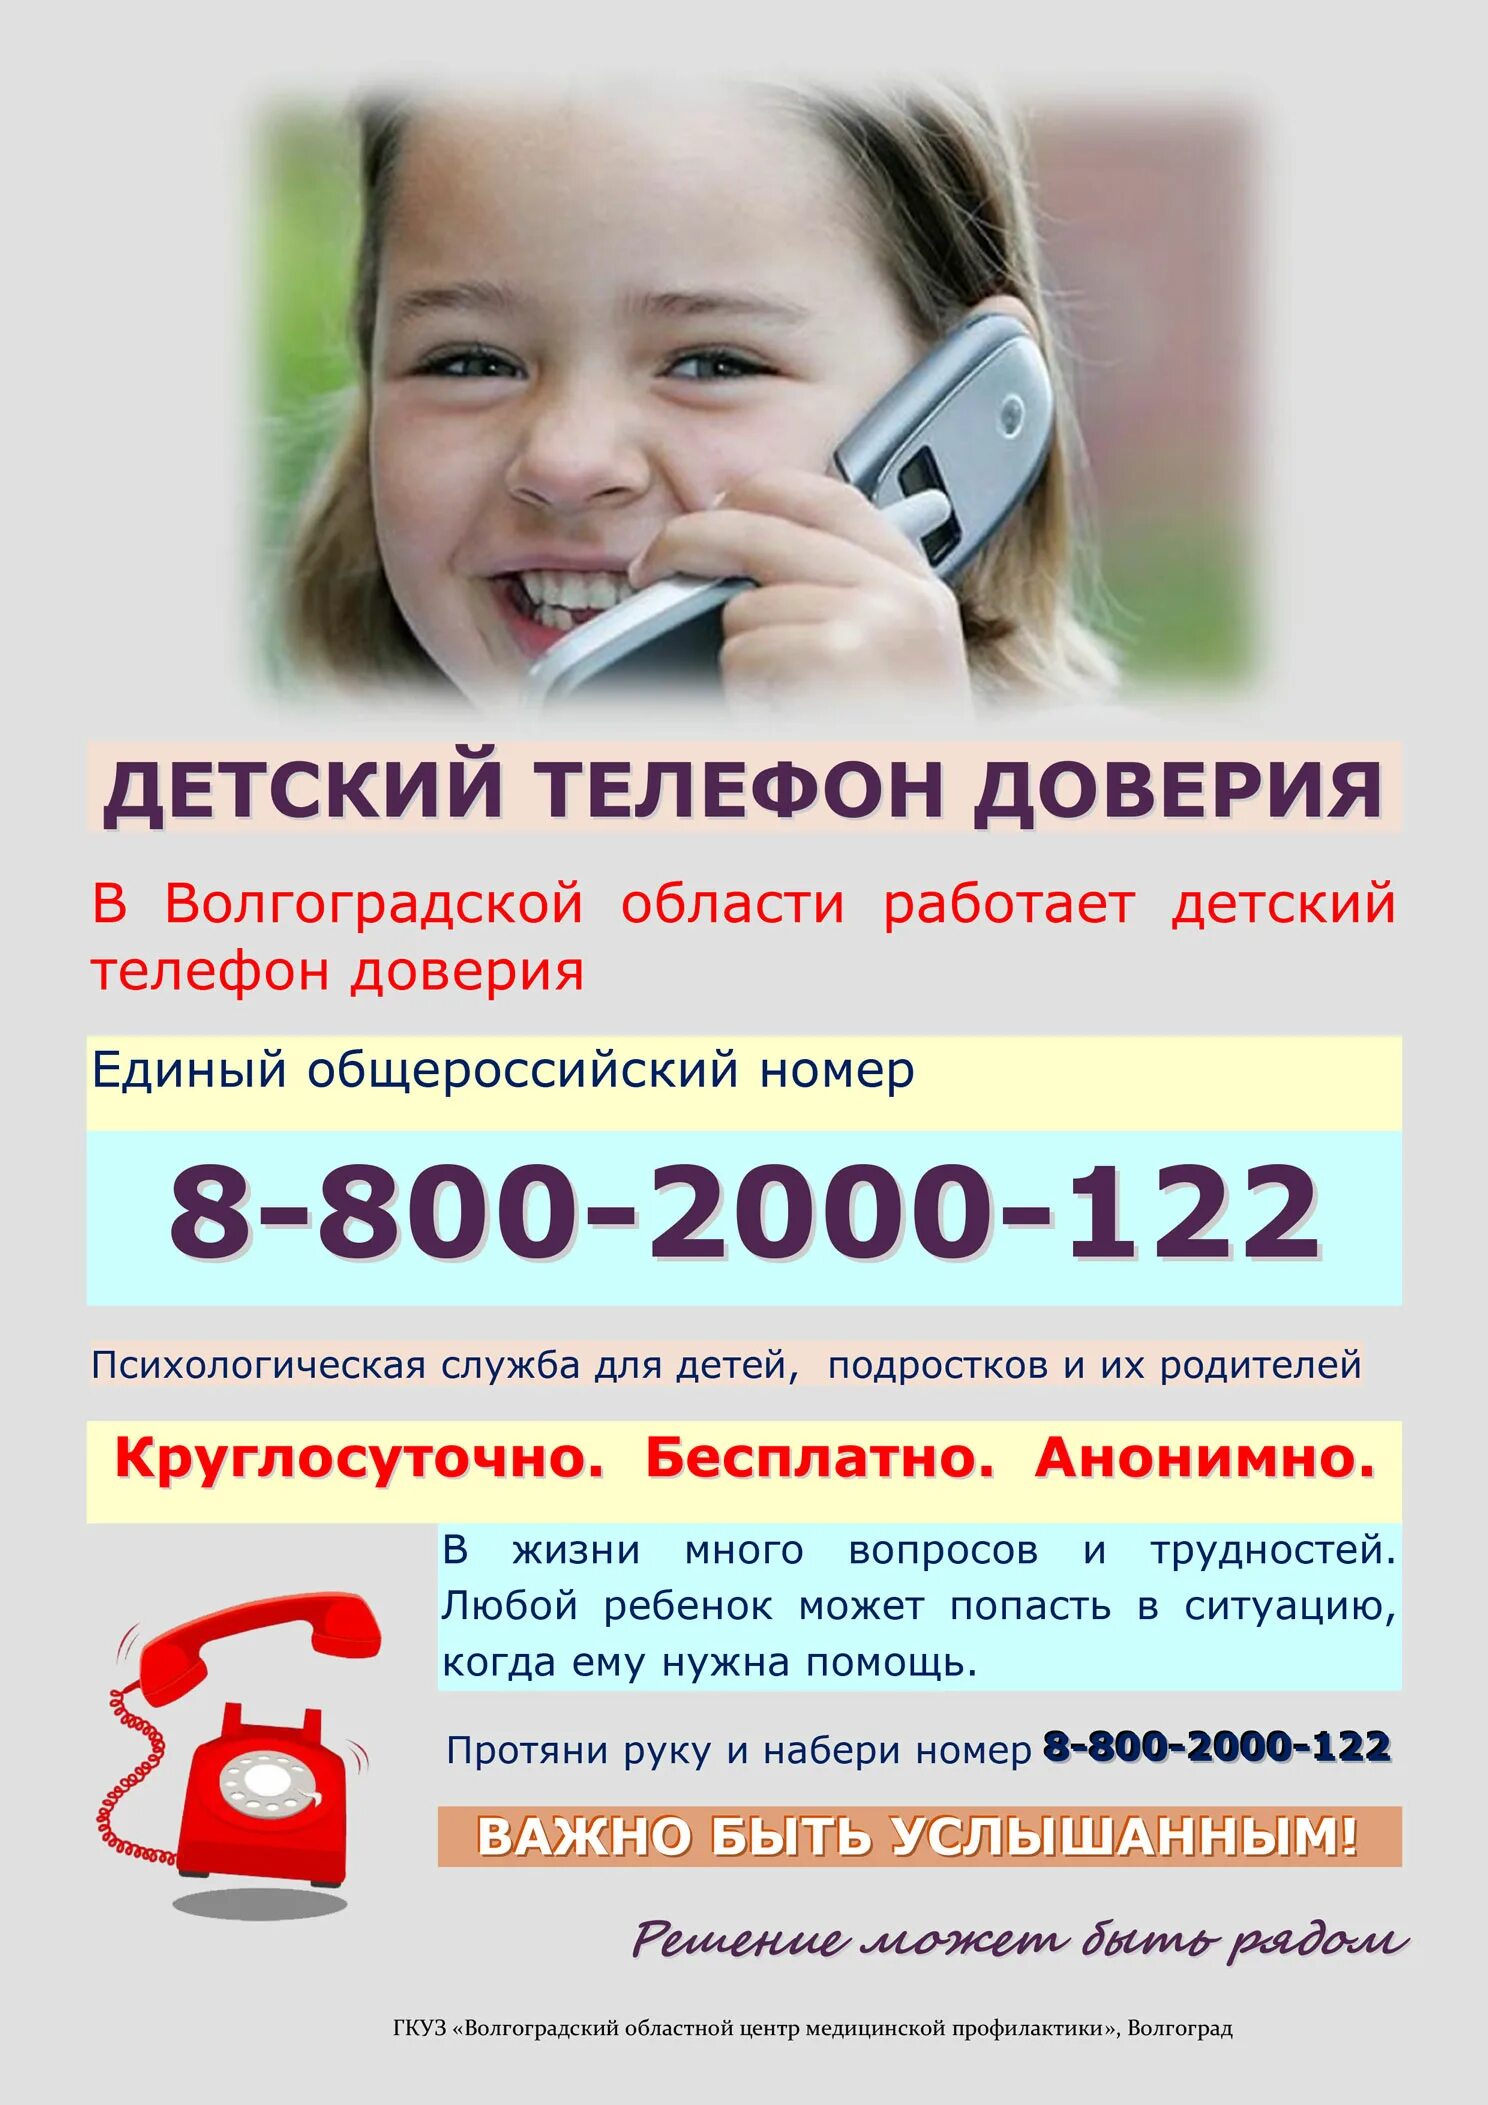 Номер телефона детской школы. Телефон доверия. Детский телефон доверия. Телефон доверия для детей подростков и их родителей. Номер телефона доверия для детей.